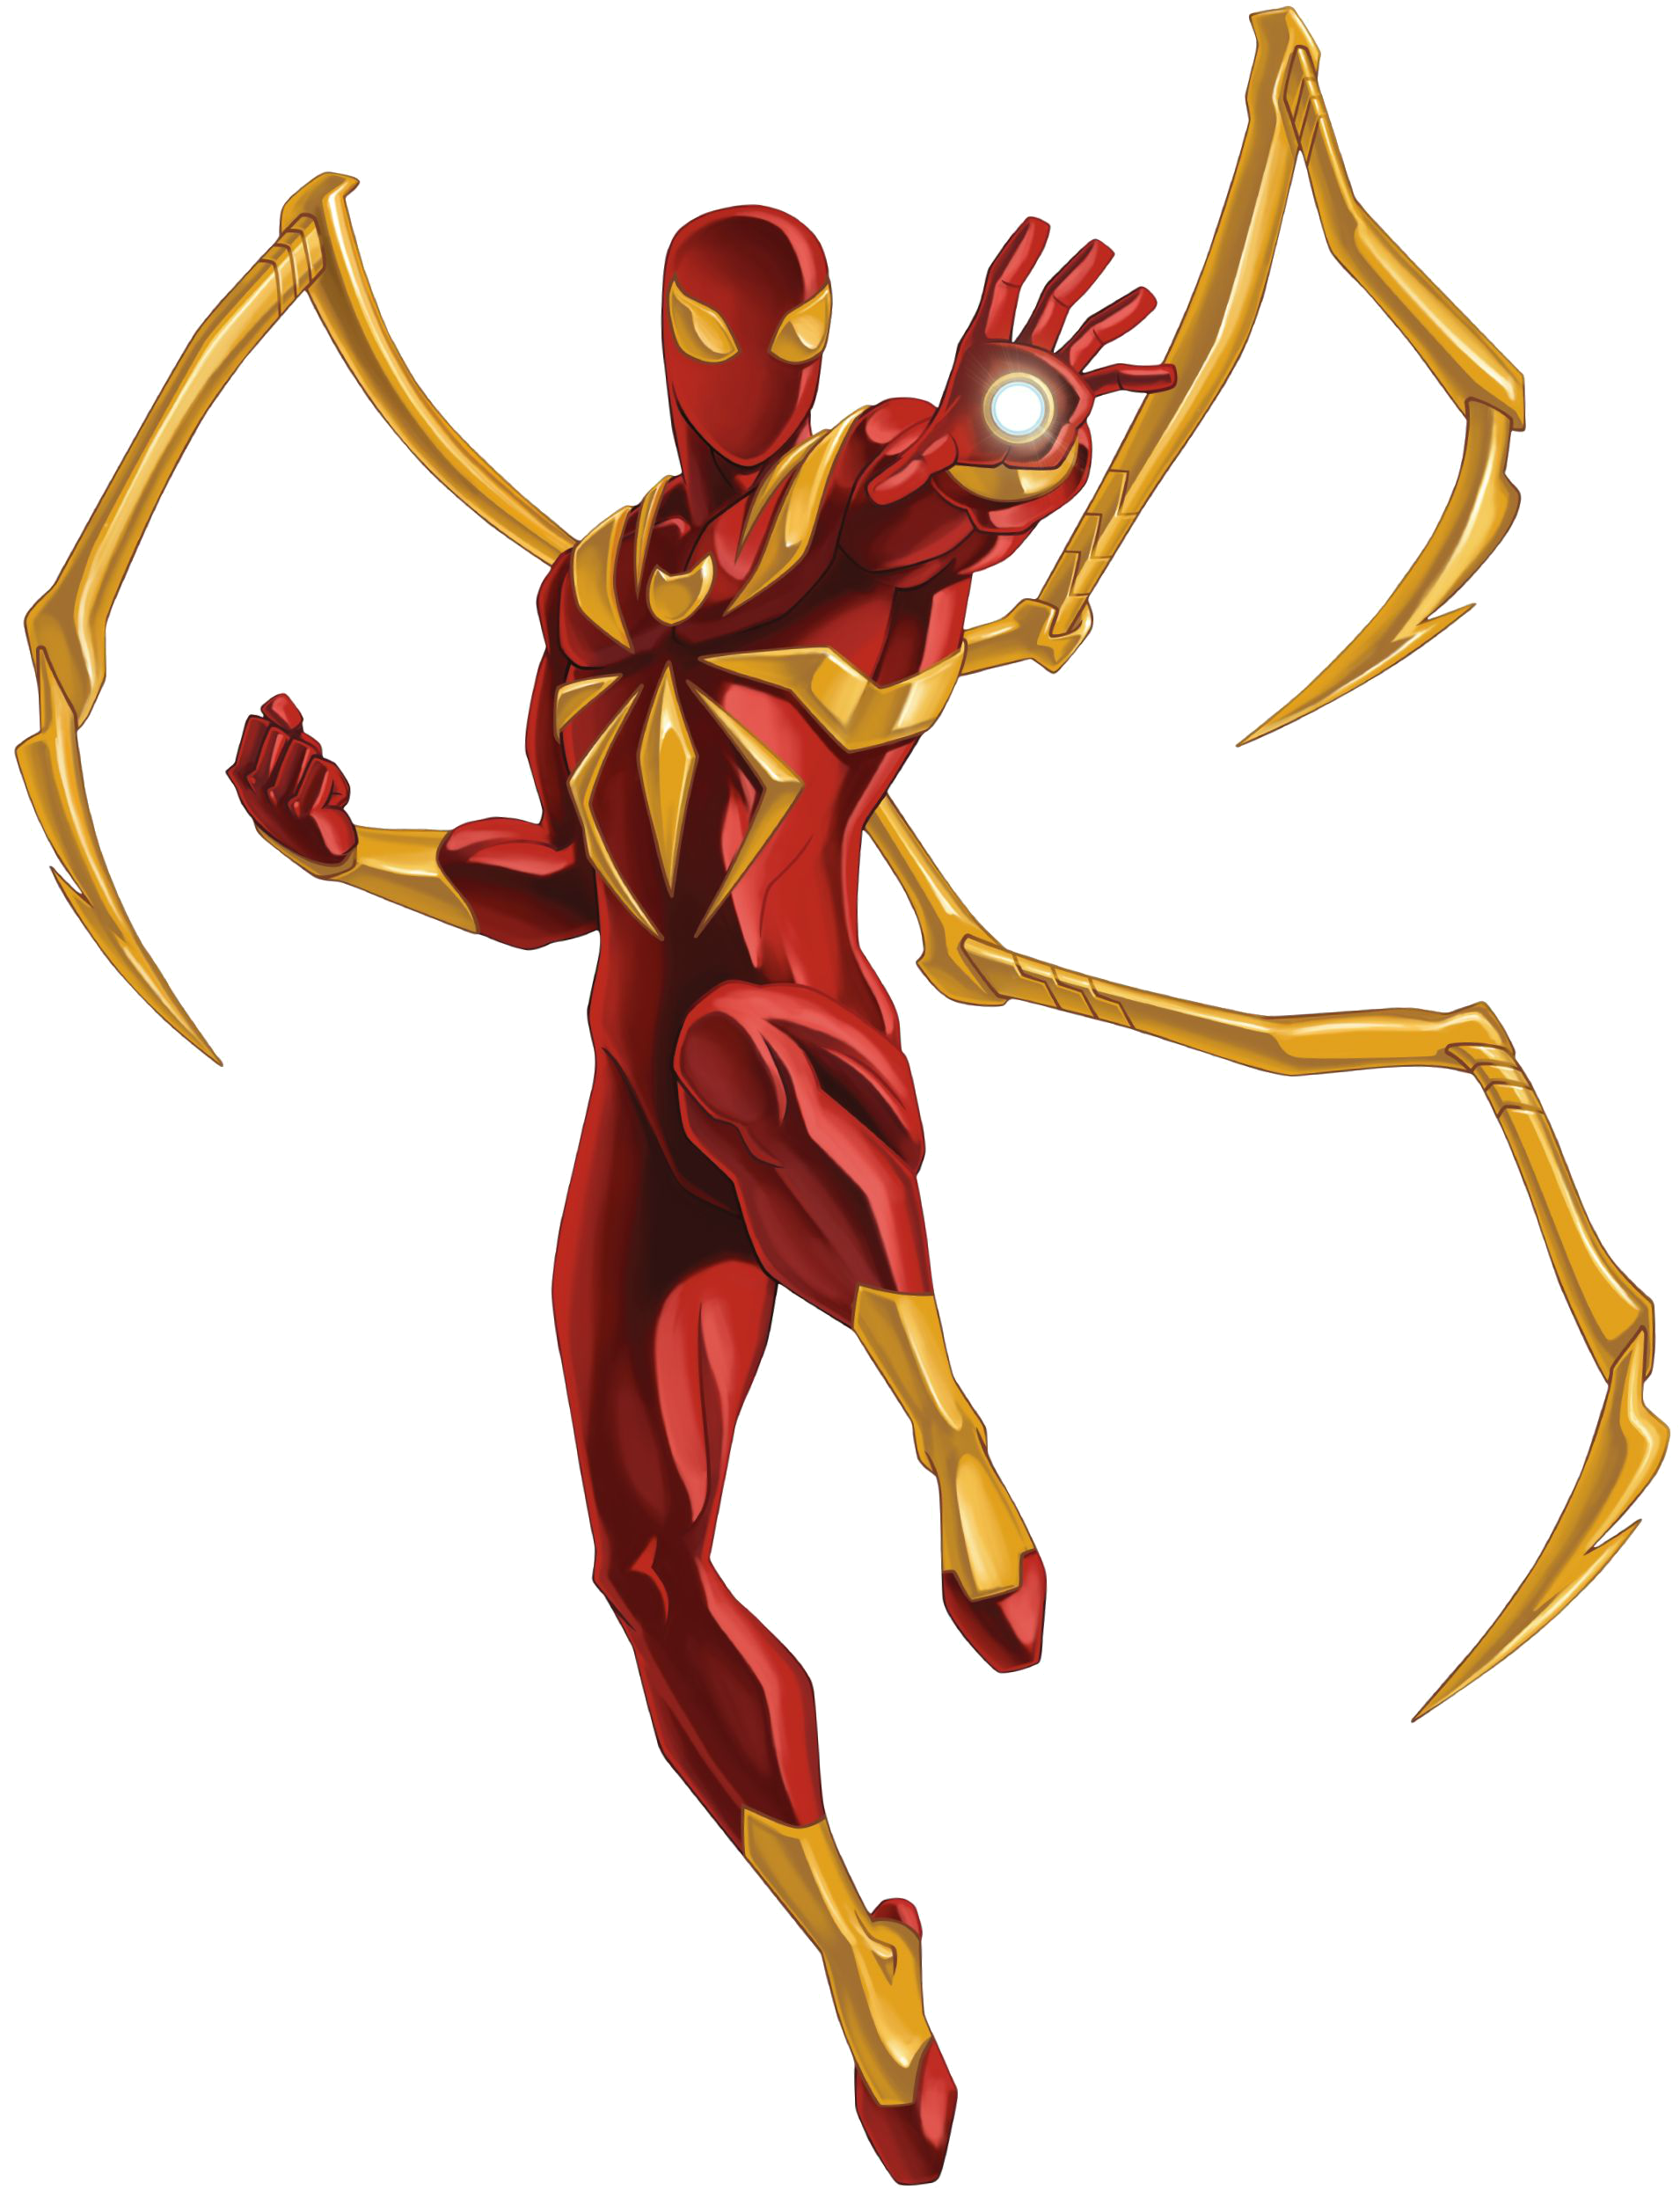 Spider-Man Fanart: Iron-Spider Suit | Artwork by Warren Wood… | Flickr